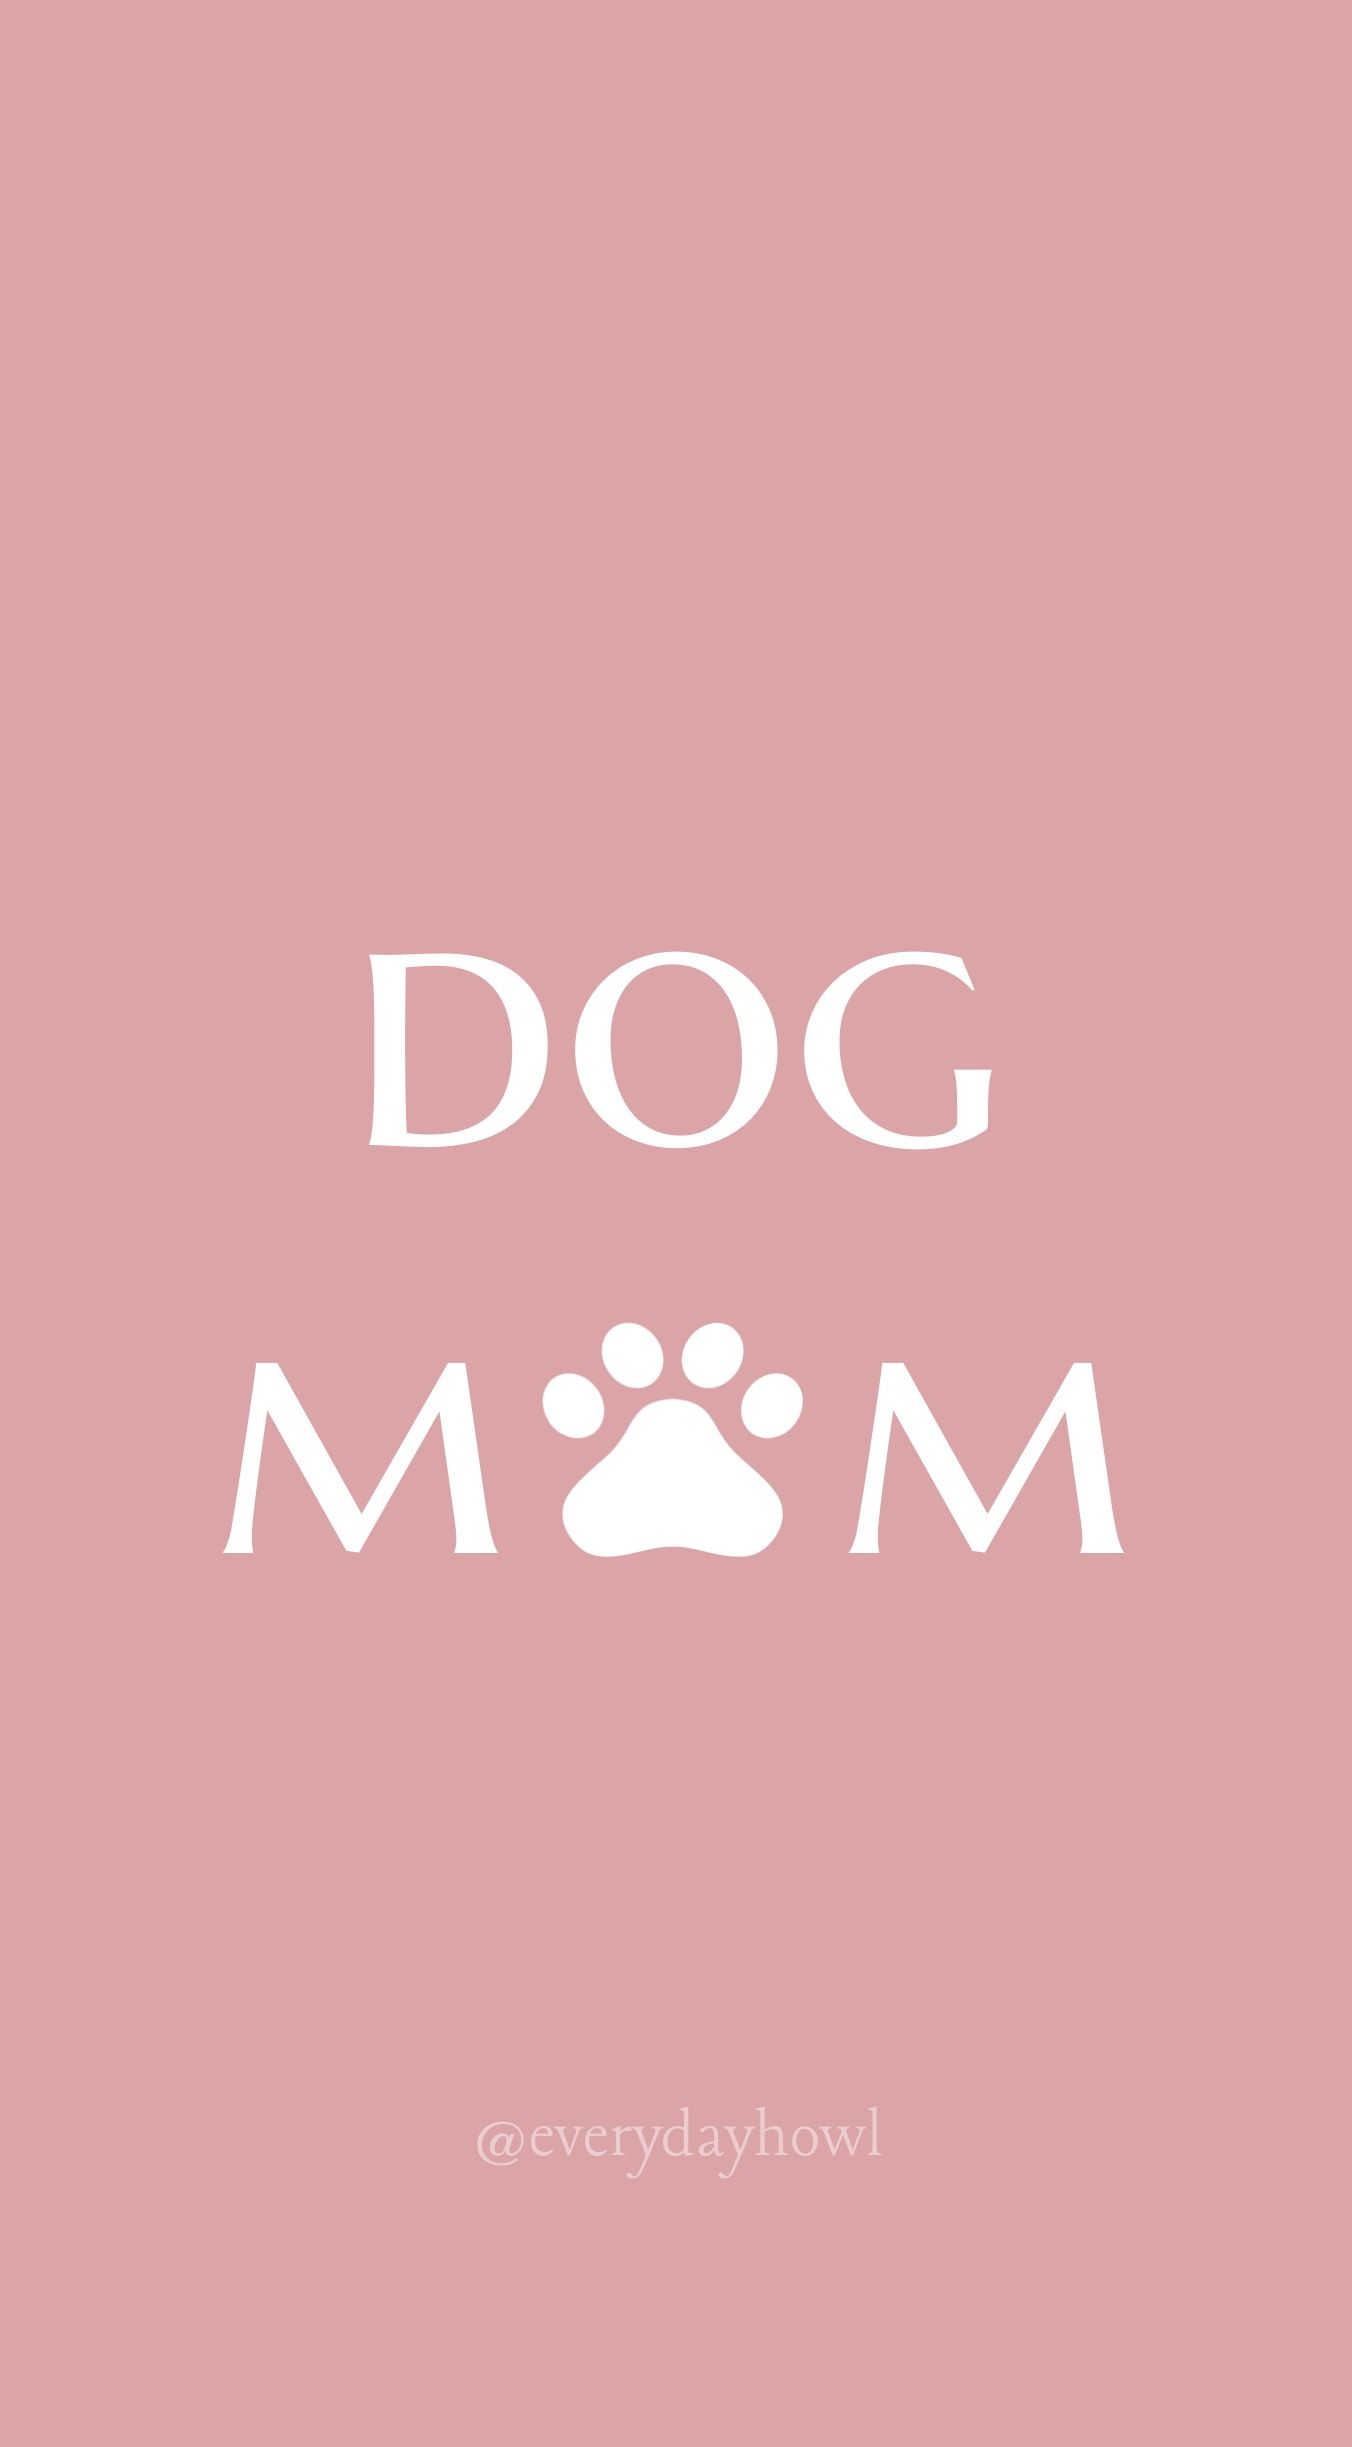 13 Dog mom ideas  dog mom paw wallpaper dog icon